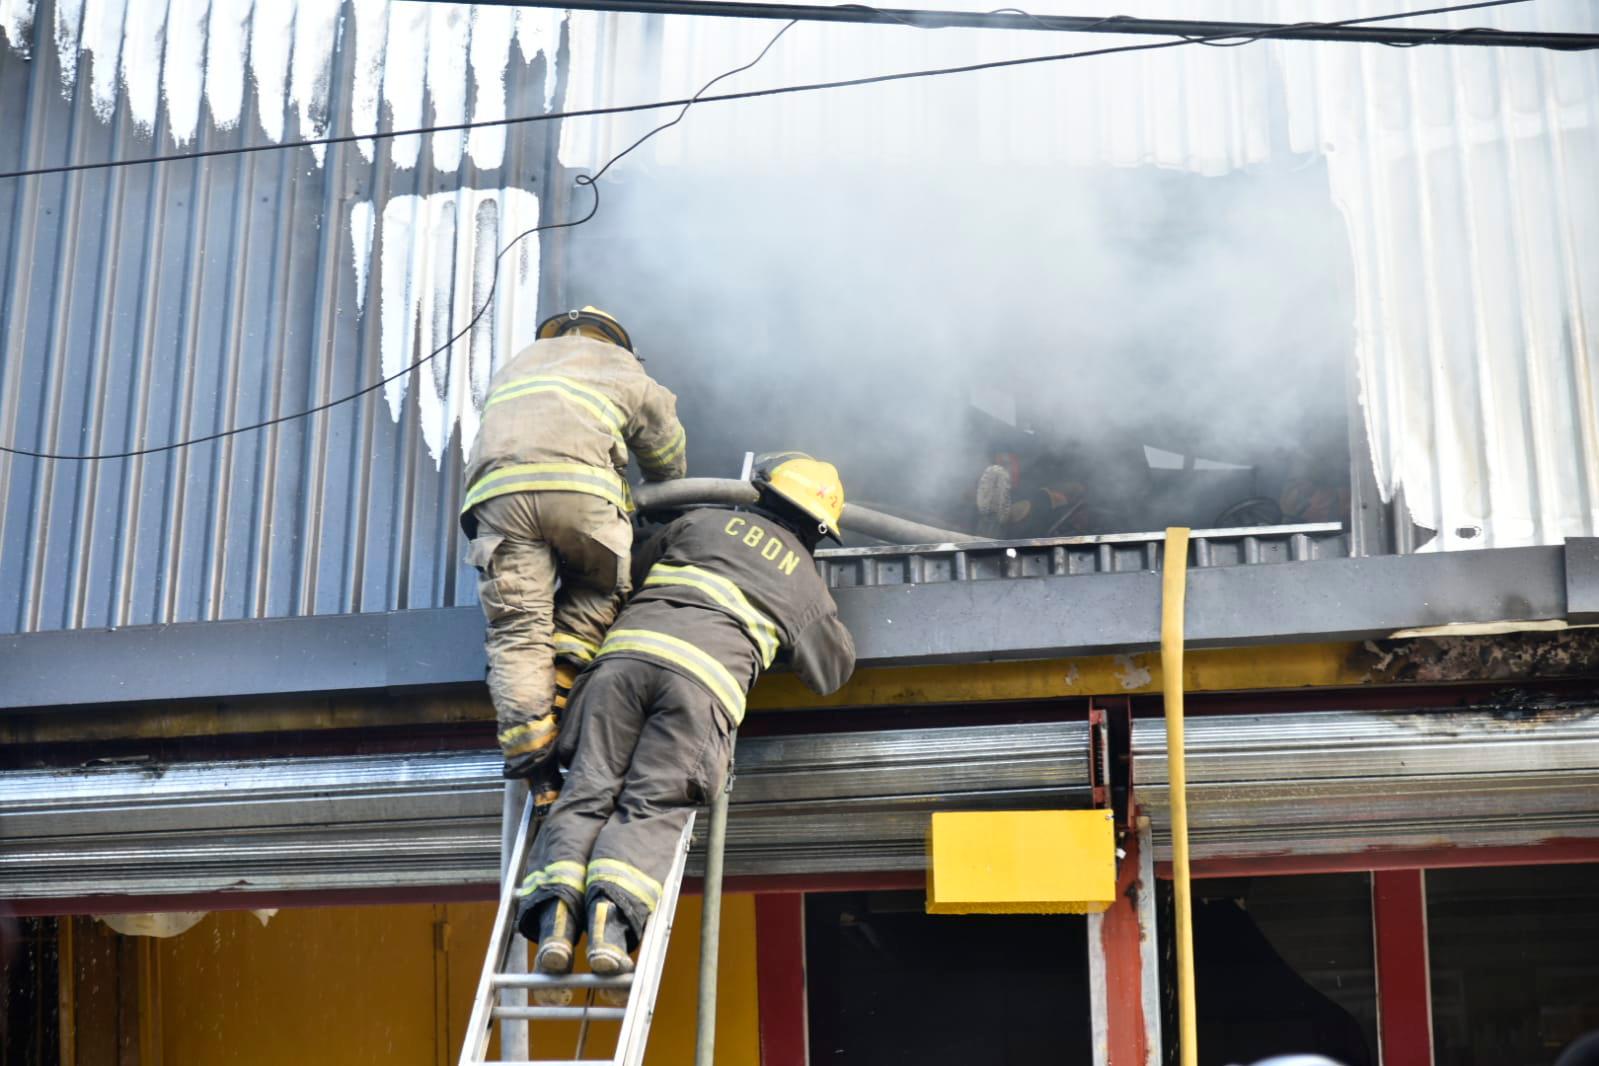 Bomberos del Distrito Nacional trabajando para sofocar incendio que afectó tienda principal de Aro y Pedal.